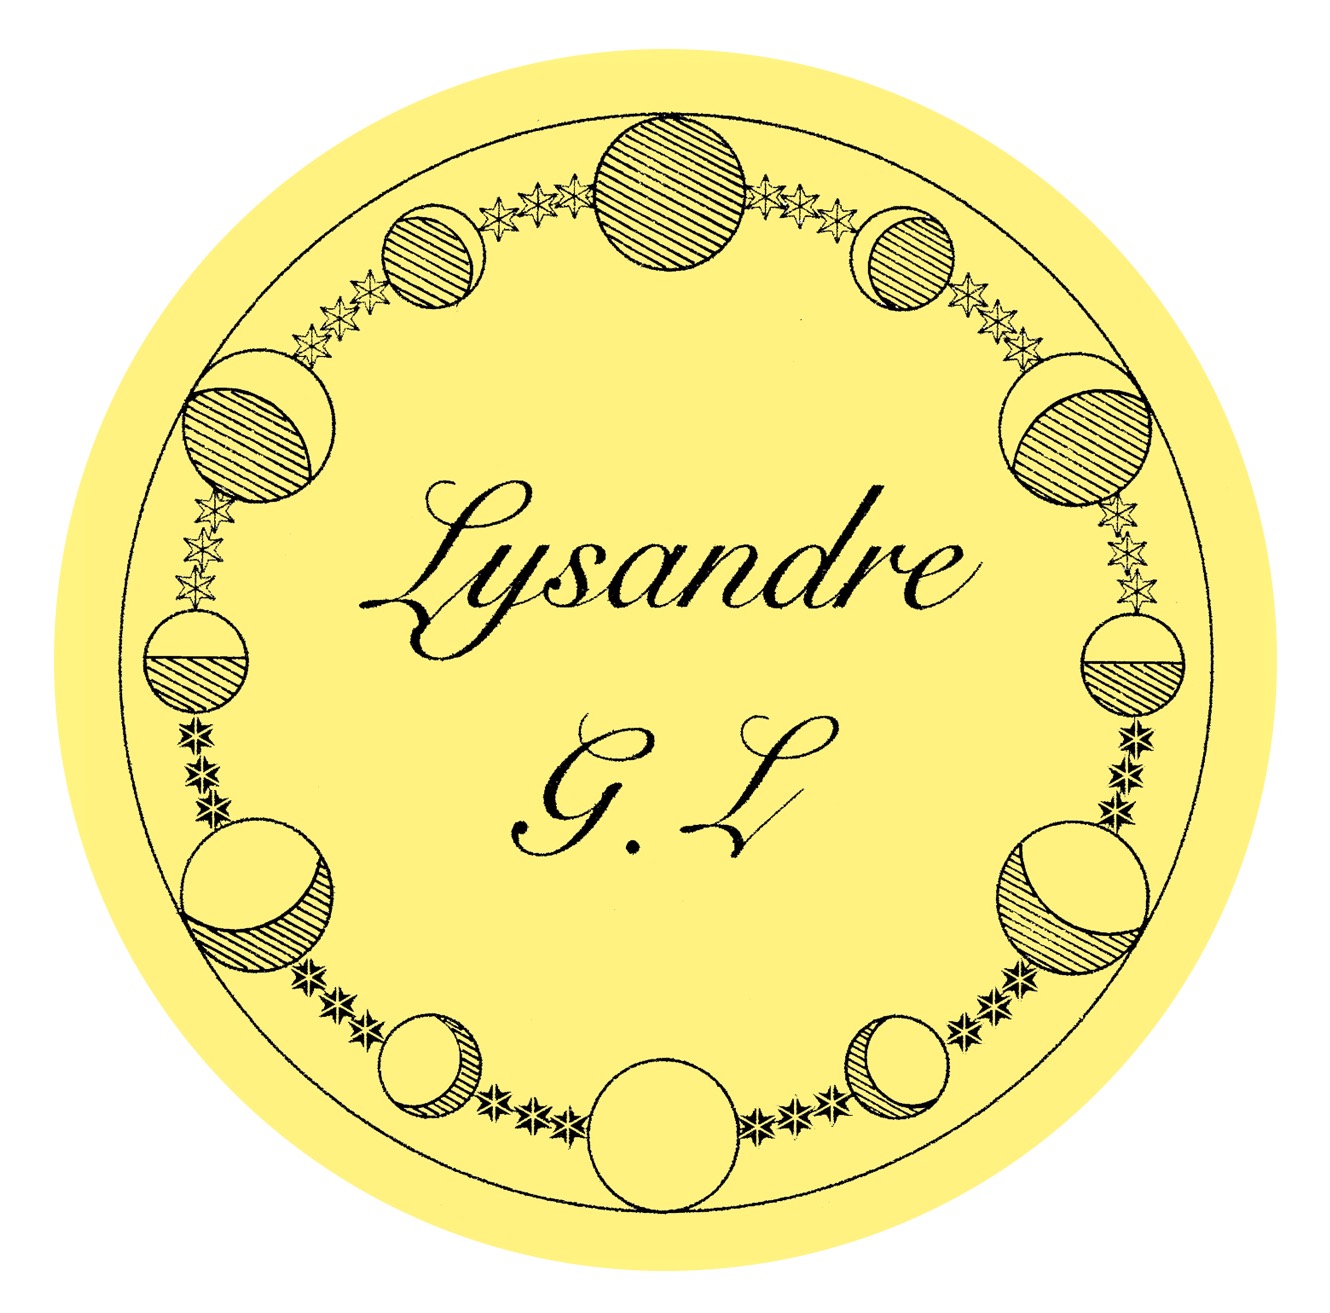 Lysandre G.L Ready To Wear Spring Summer 2019 Paris  أسبوع الموضة في باريس لربيع